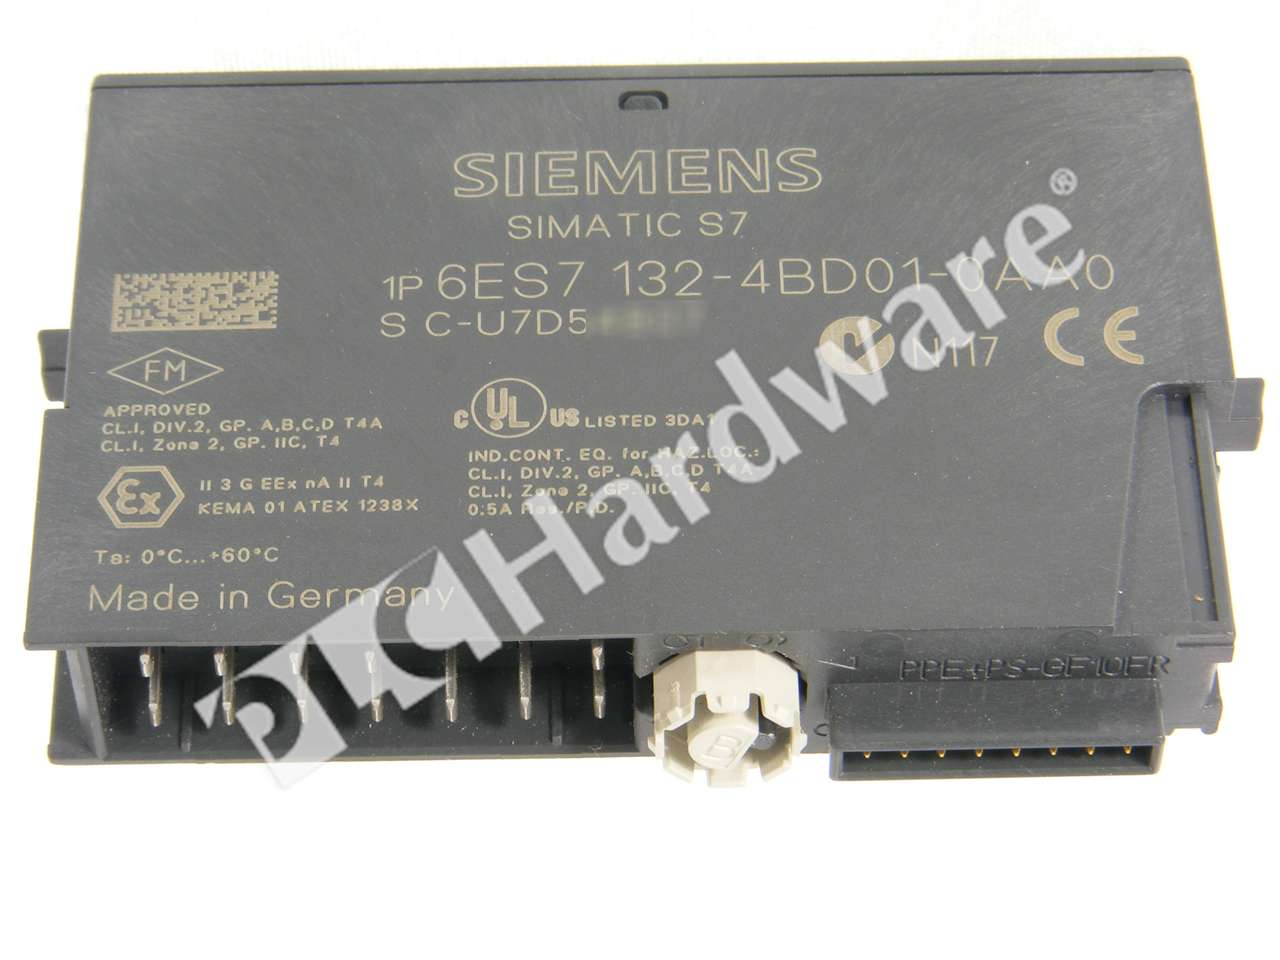 6ES7132-4BD01-0AA0 SIEMENS 6ES7 132-4BD01-0AA0 SIMATIC DP Elektronikmodul 